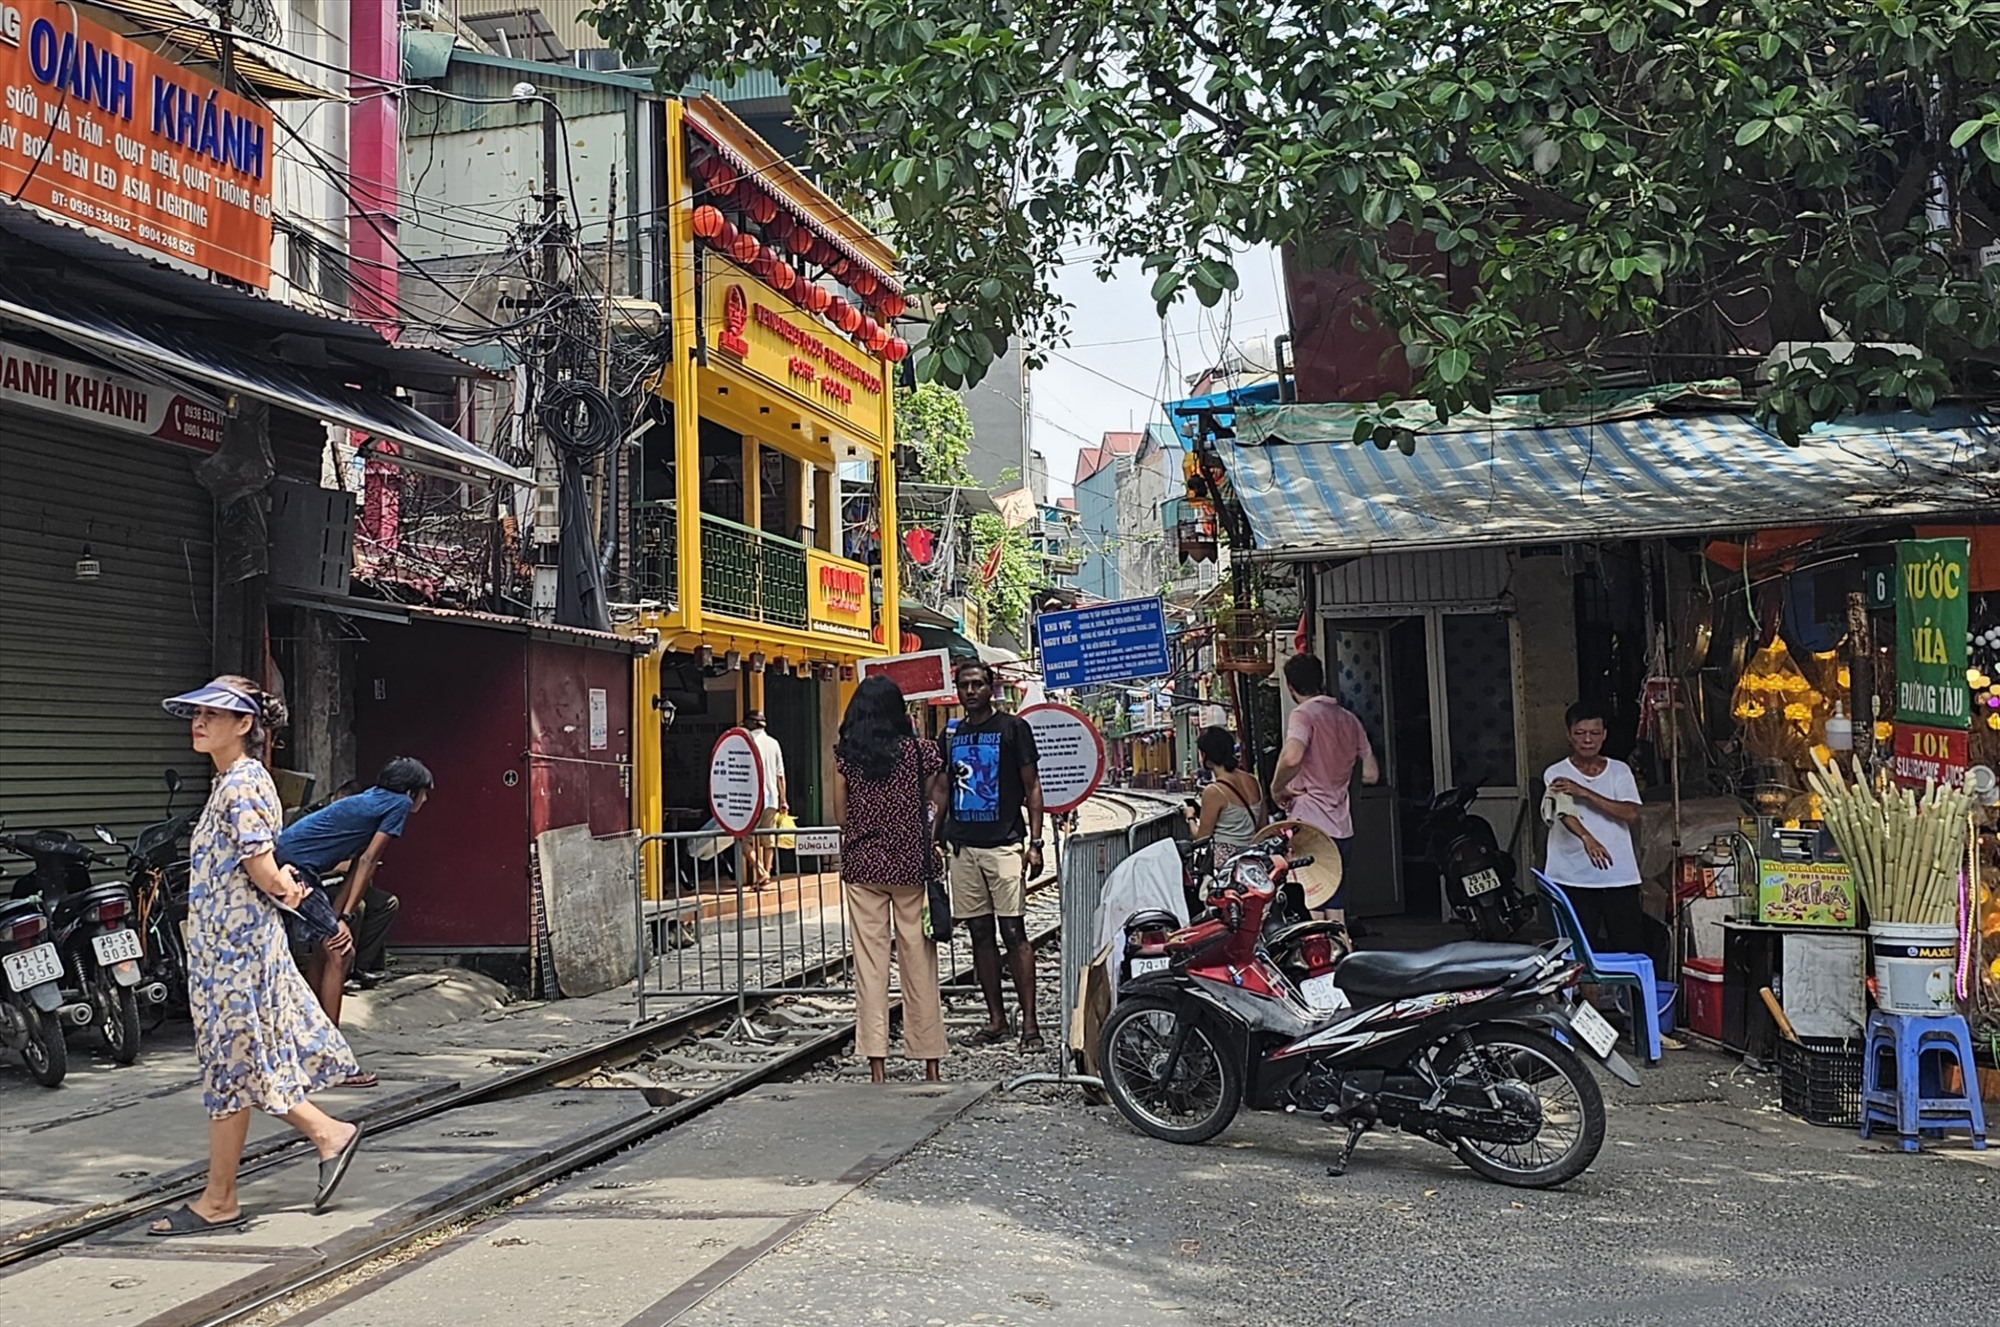 Được biết, khu vực tuyến phố cà phê đường tàu thuộc quản lý của 2 phường Hàng Bông và Cửa Đông của quận Hoàn Kiếm.